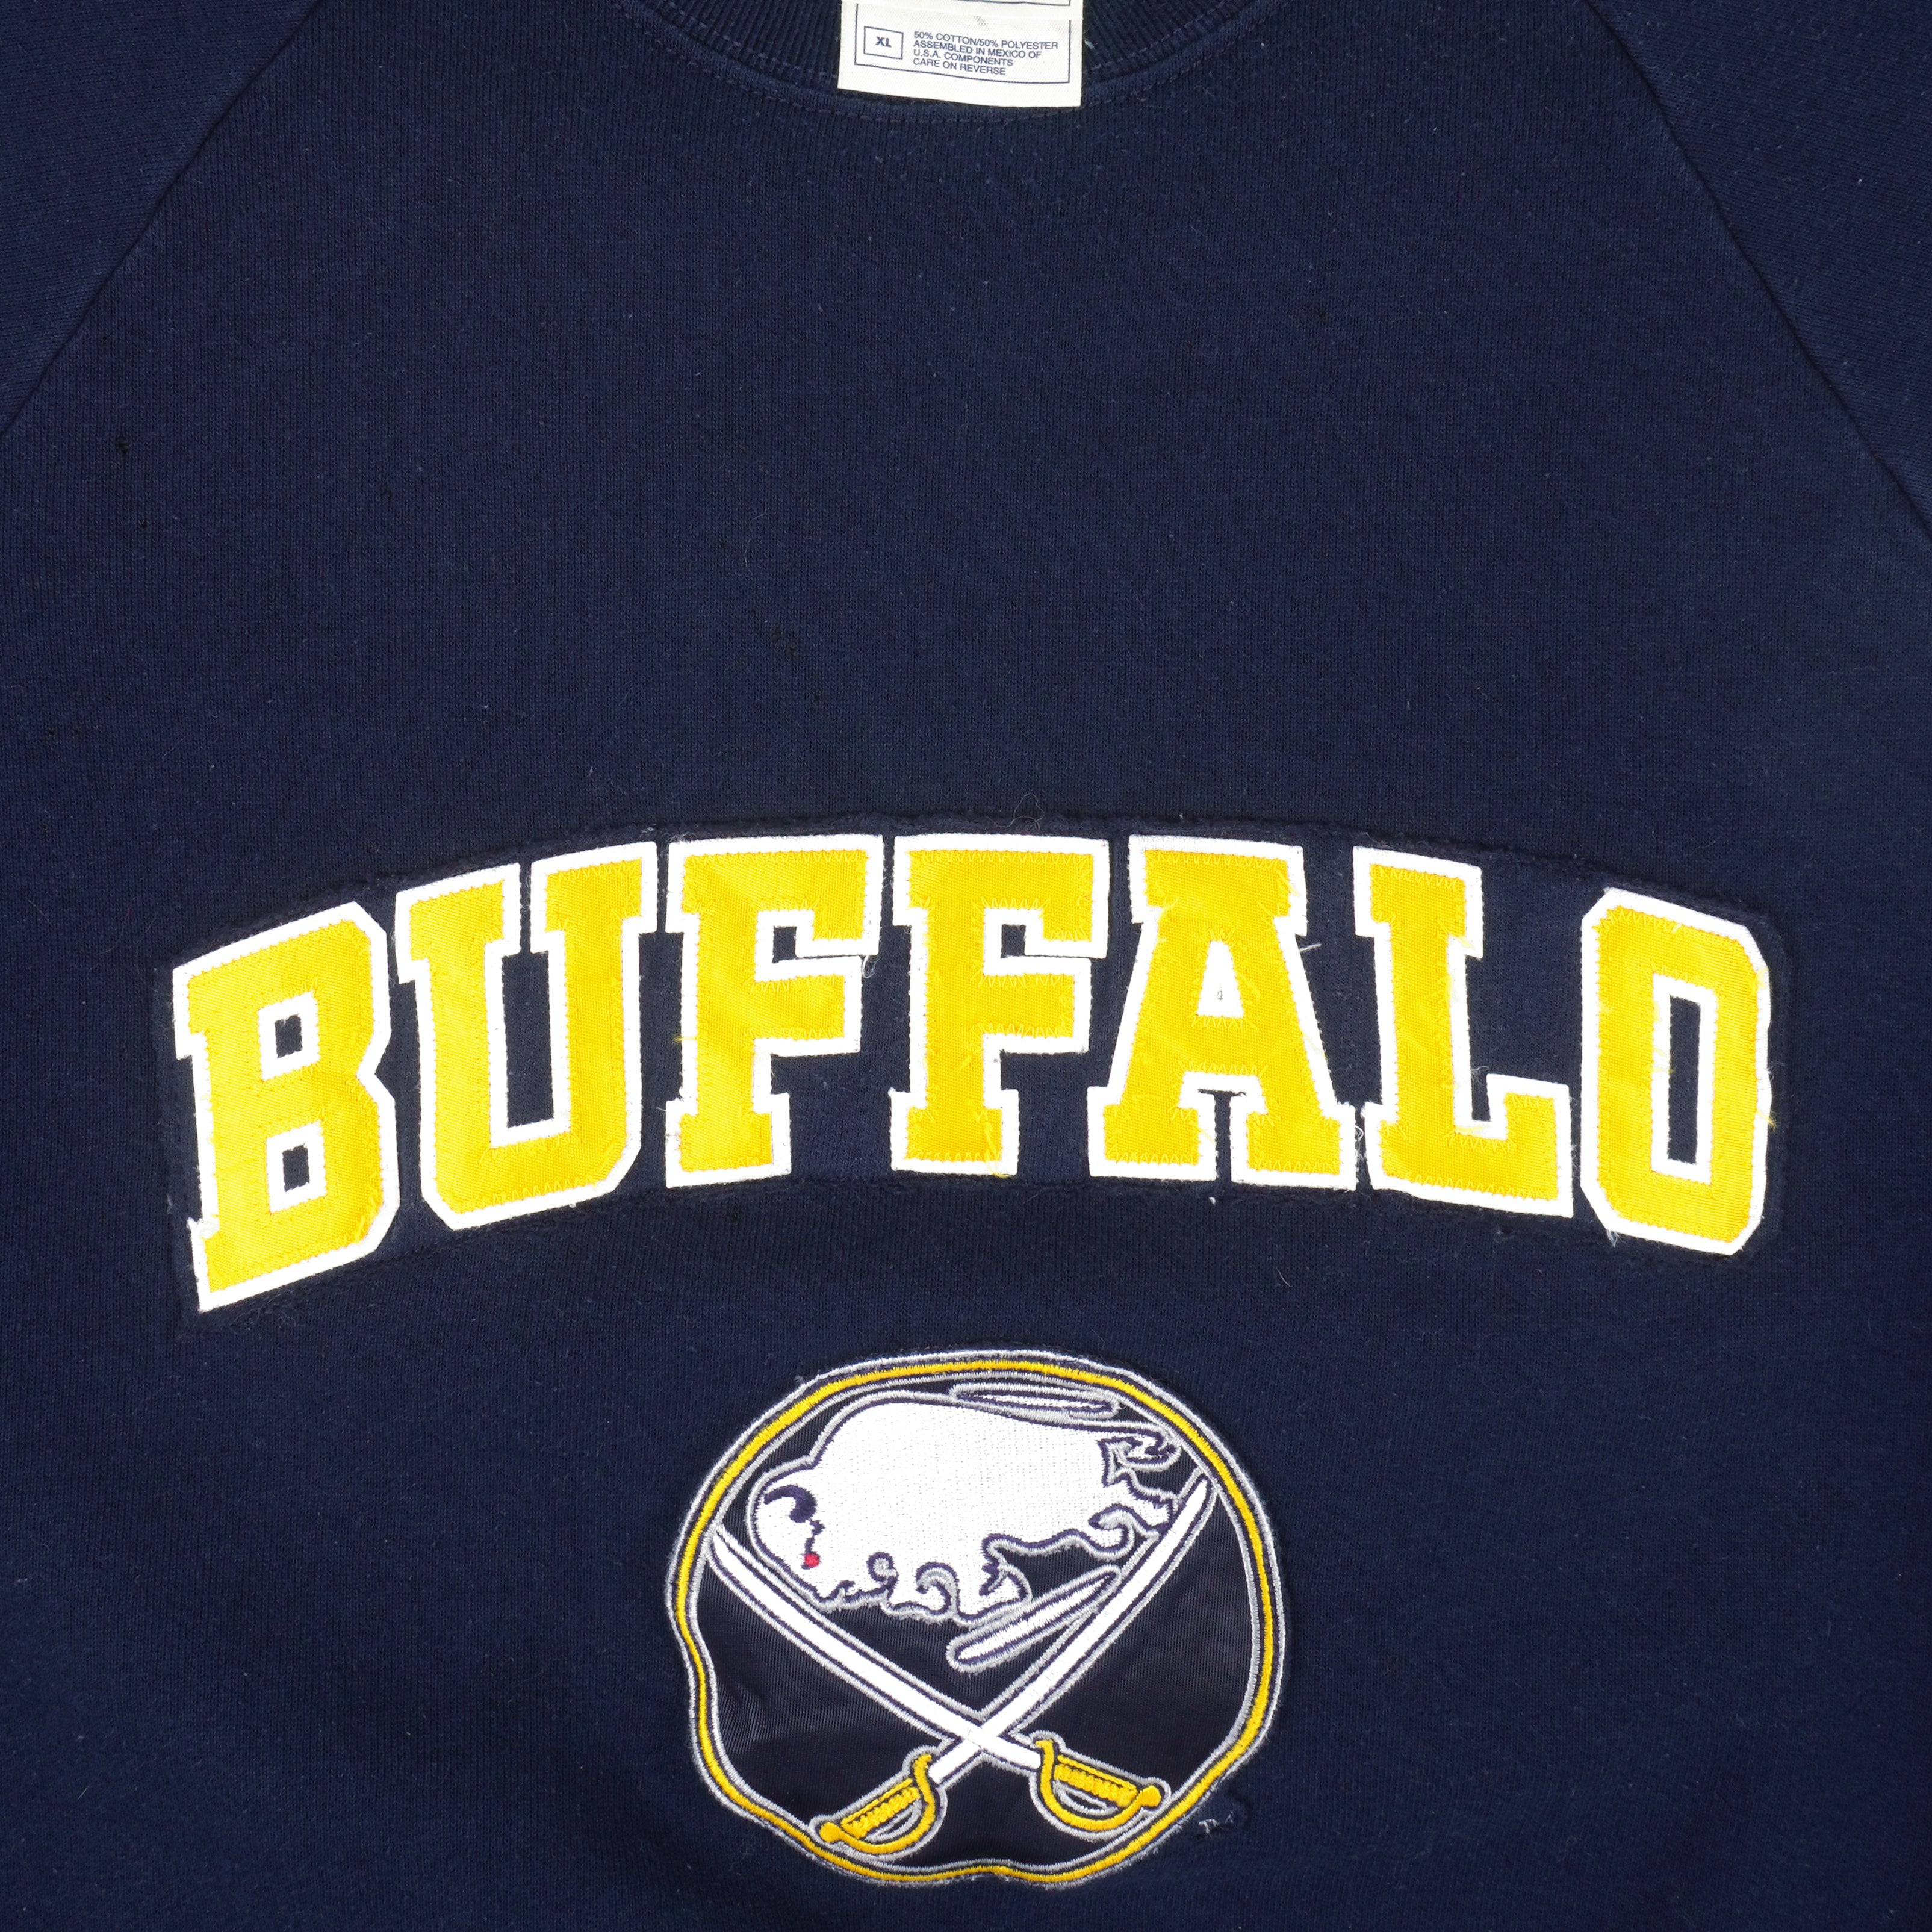 Vintage Buffalo Sabres Sweatshirt (1990s) 